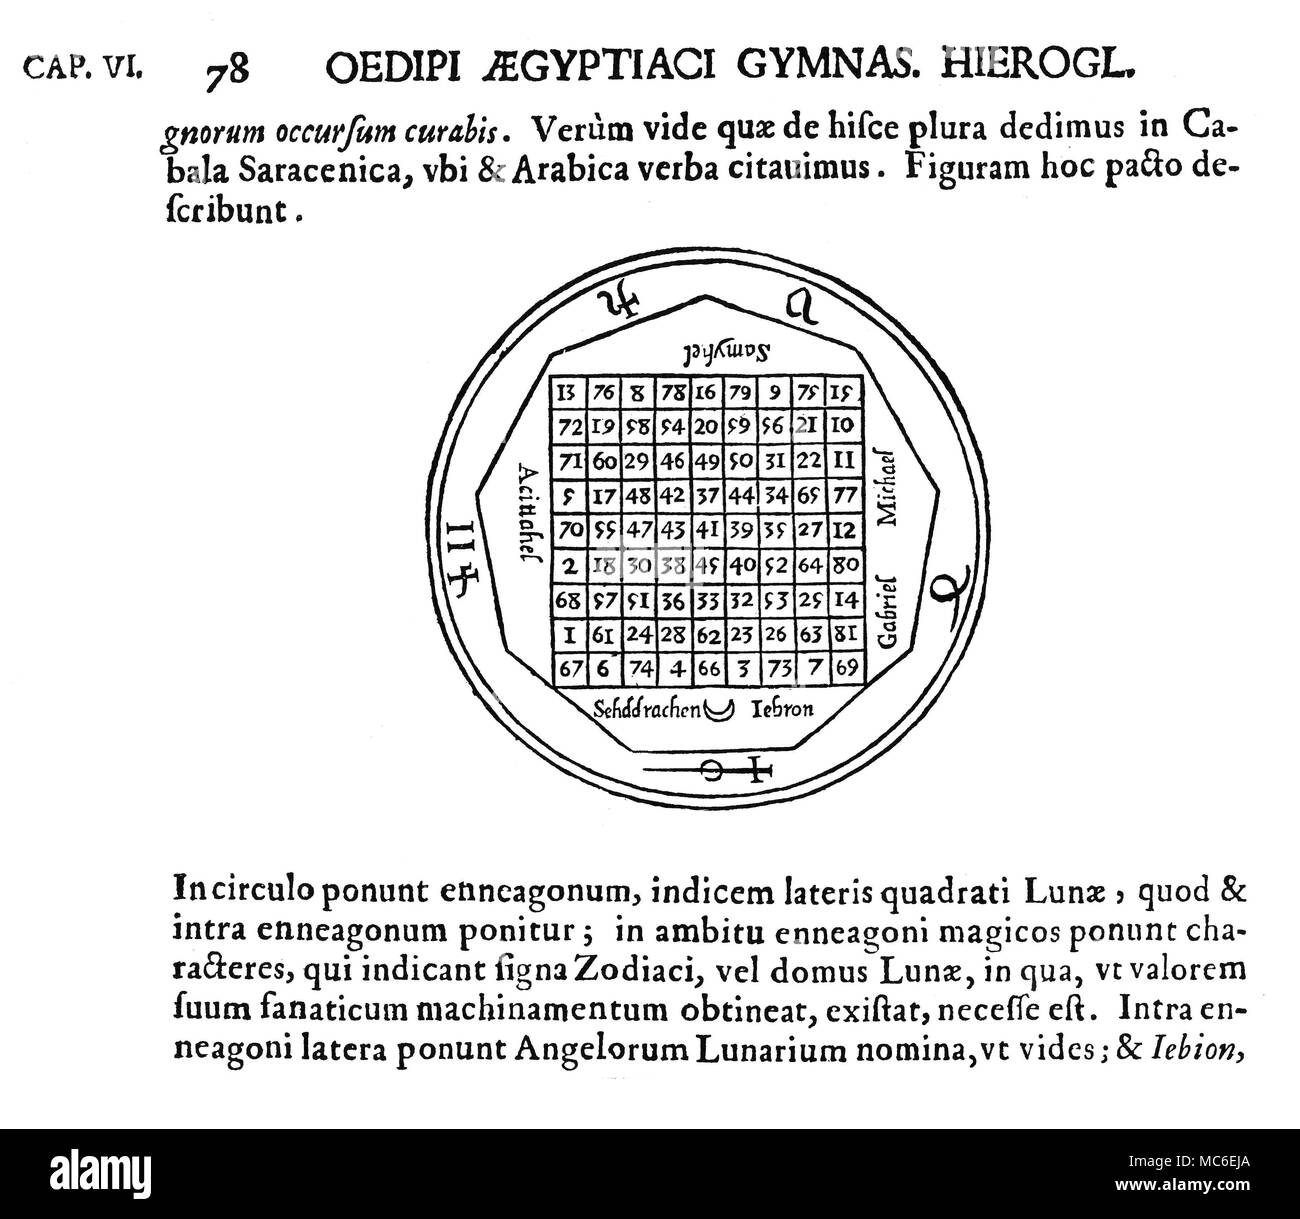 Symboles magiques - Carrés Magiques - lune la table de Lunae, ou carré magique de la Lune, basé sur un carré de 9 x 9, le seul ajout de linéaire qui est 369, dans n'importe quelle direction. La place est entourée de divers noms et cachets des anges et démons liés à la Lune. D'Athanasius Kircher, Œdipus Ægyptiacus, 1652-4. La structure, et certains de l'ange lore, est dérivé de la Carrés Magiques publié par Cornelius Agrippa. Banque D'Images